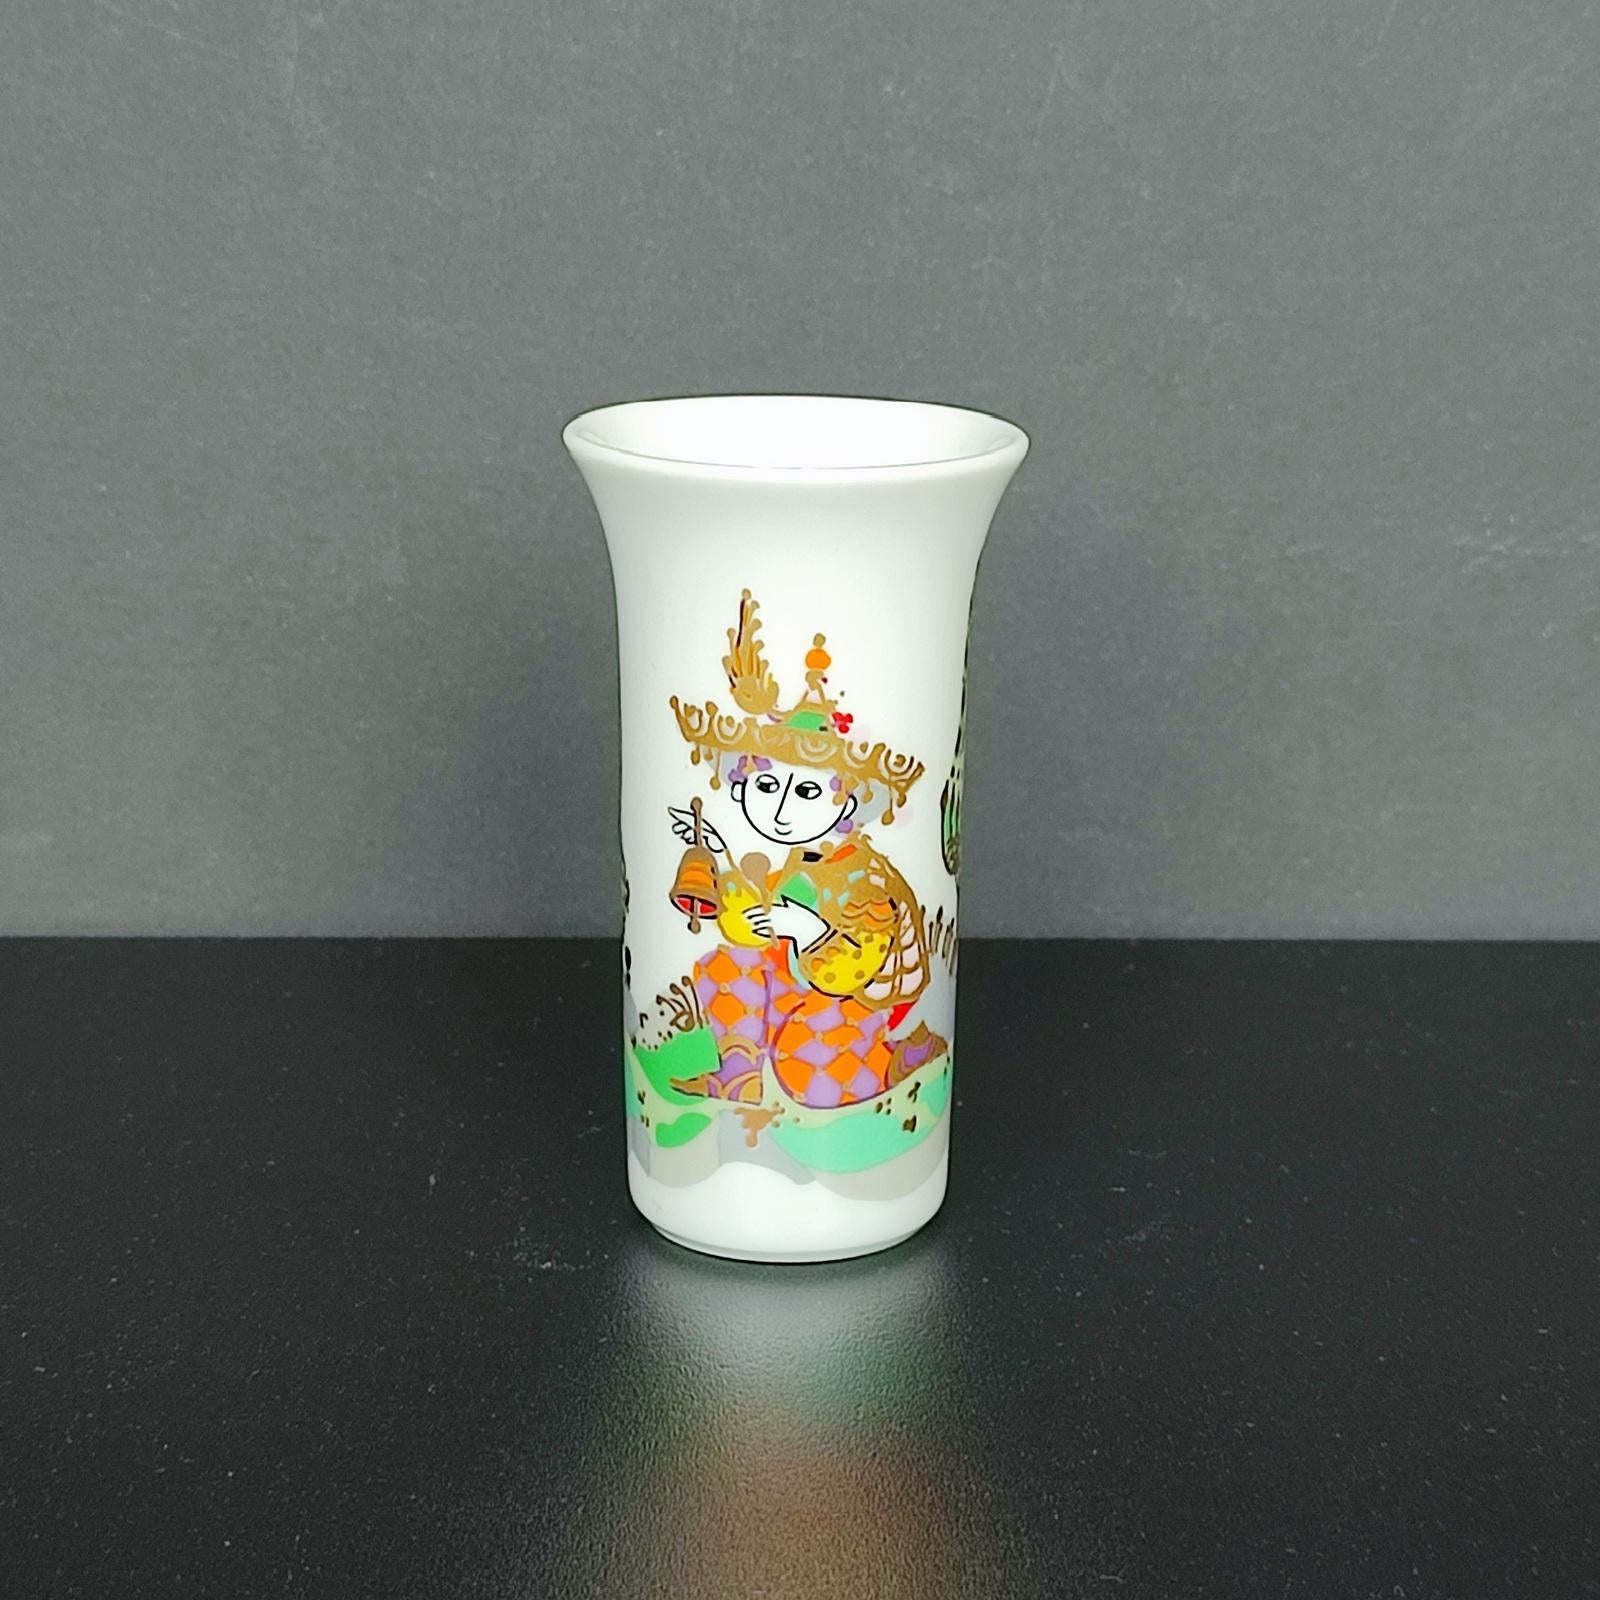 Rosenthal Studio-linie 'Arundo' Vase von Bjorn Wiinblad, Deutschland 1986 - Deutsches Porzellan.
Signiert Björn Winblad auf der Wand, Herstellerzeichen auf dem Boden.
Eine hübsche kleine Vase von außergewöhnlicher Qualität!
Höhe 8.8 cm